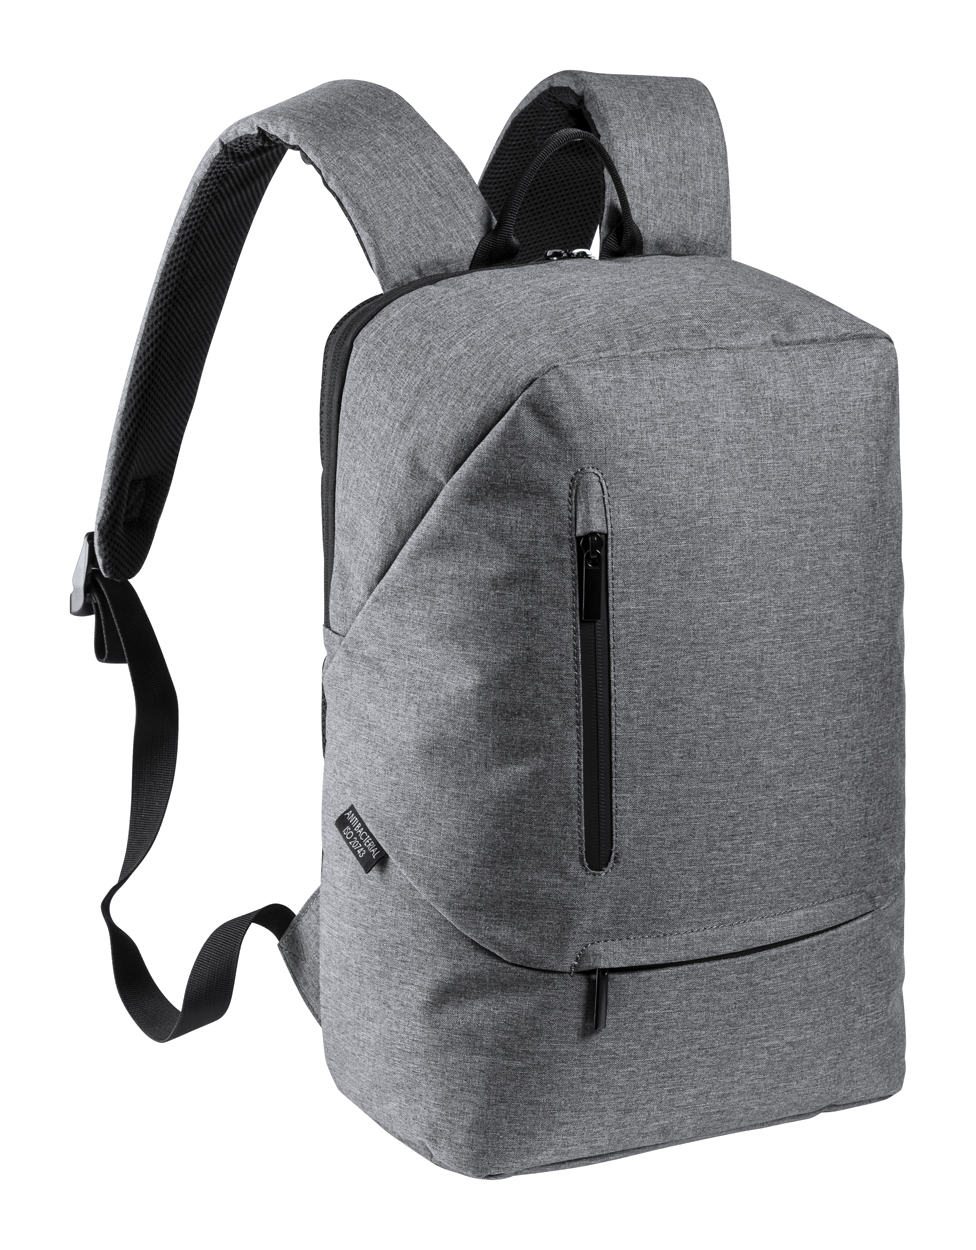 Městský batoh MORDUX s antibakteriální ochranou - šedý melír / černá